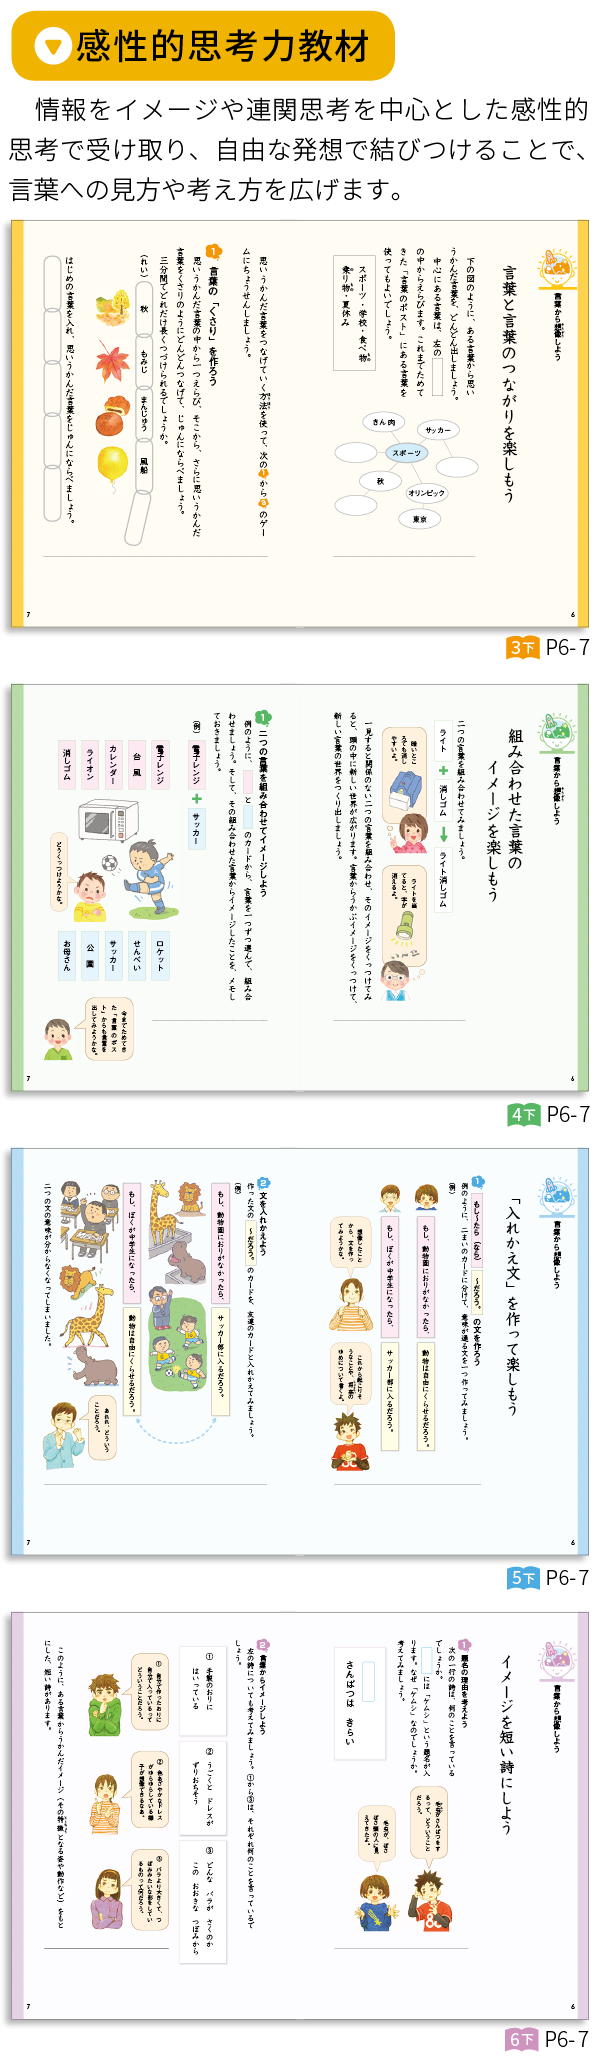 学校図書 Webパンフレット みんなと学ぶ小学校国語